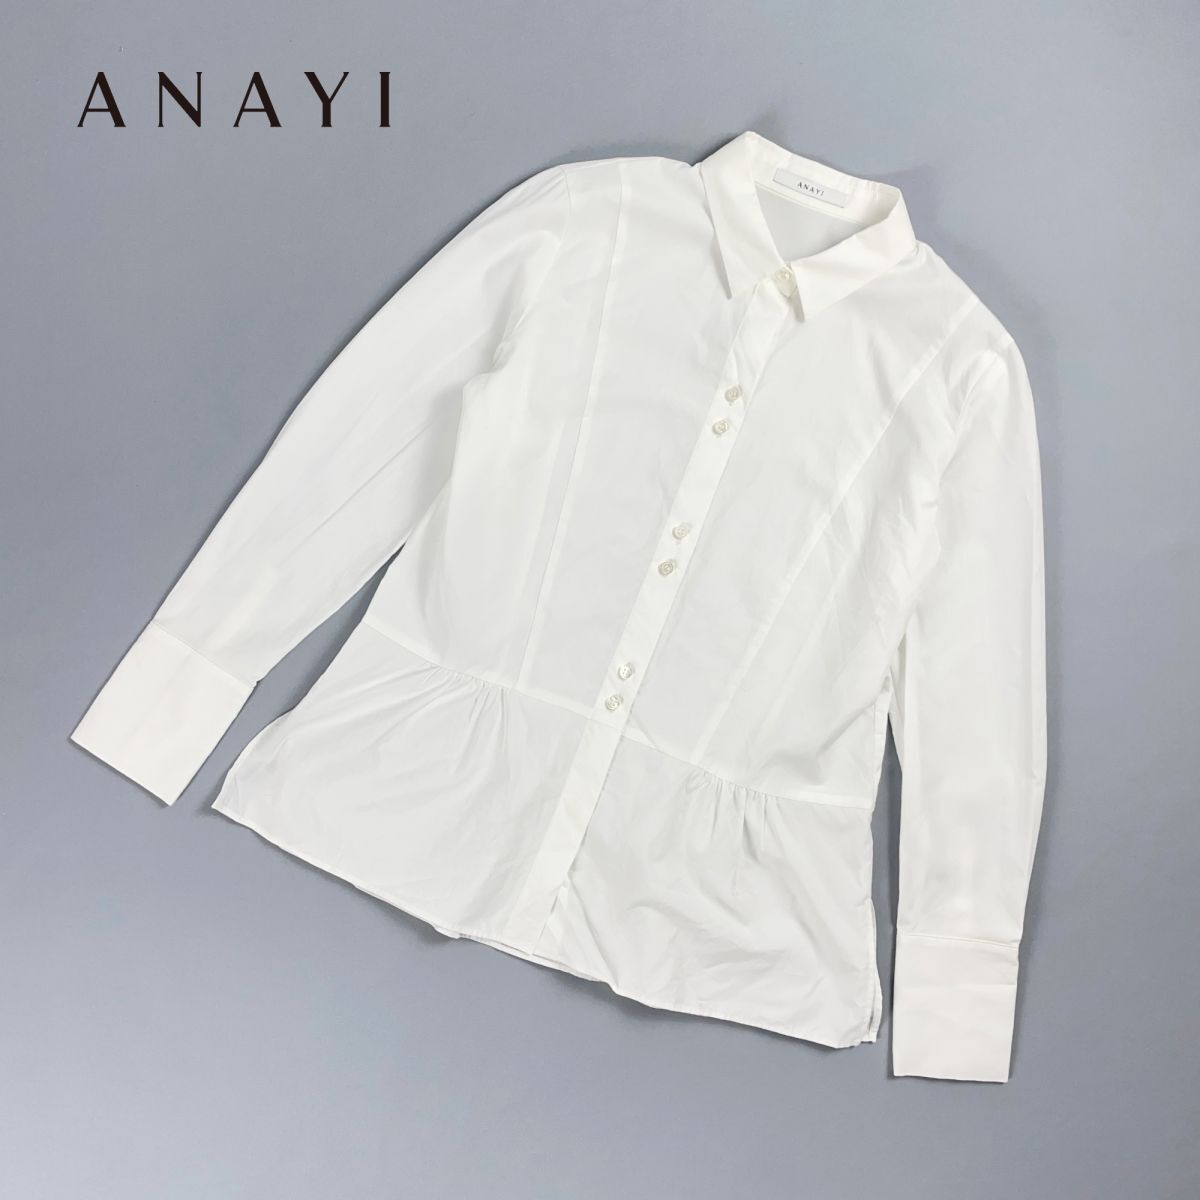  товар в хорошем состоянии  ANAYI ...  дизайн  кнопка  ... оборка    ворот  идет в комплекте  длинный рукав  ... рубашка    вершина ...  женский   белый  белый   размер  38*OC382